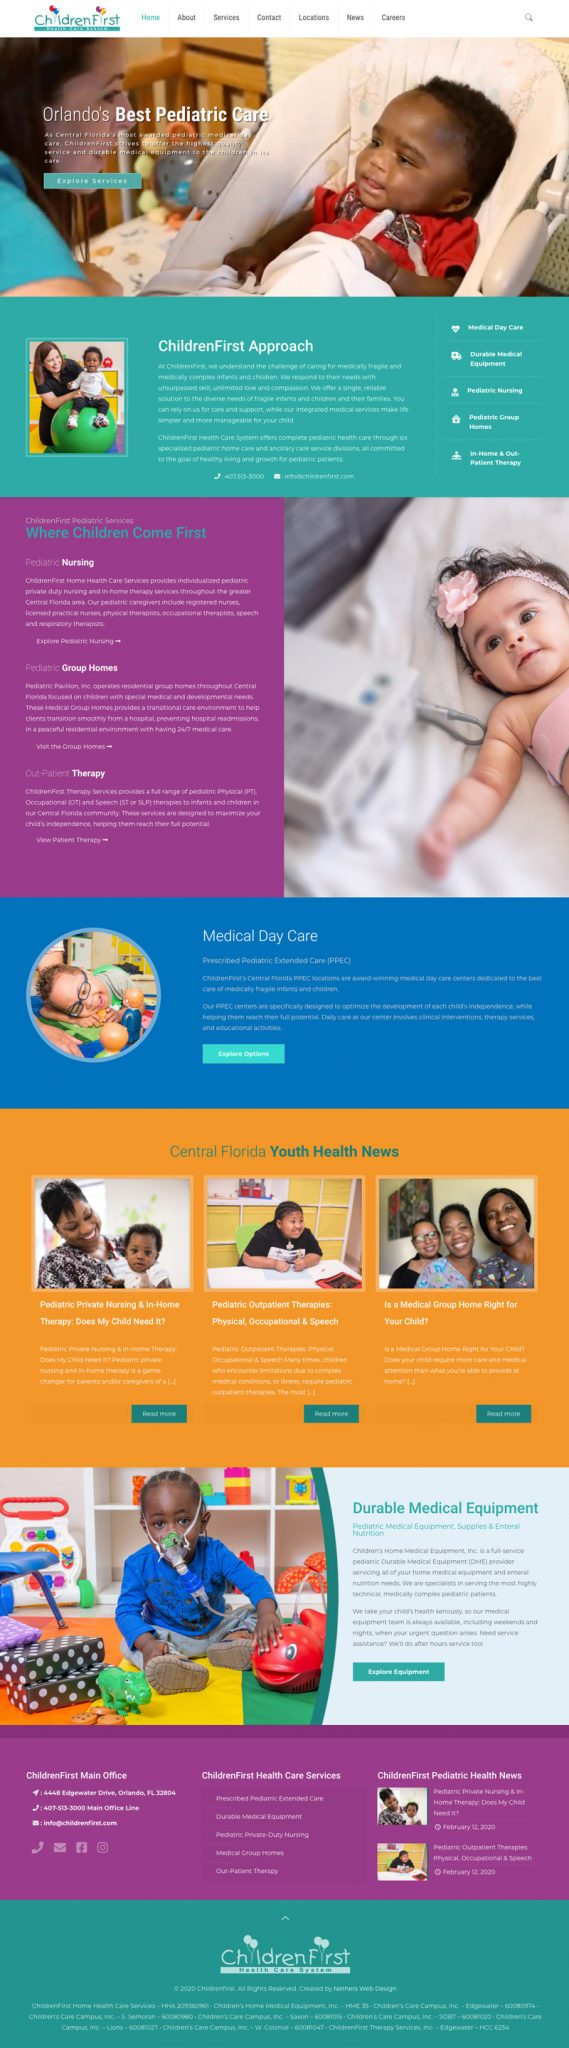 Pediatric-Childcare-Website-Design